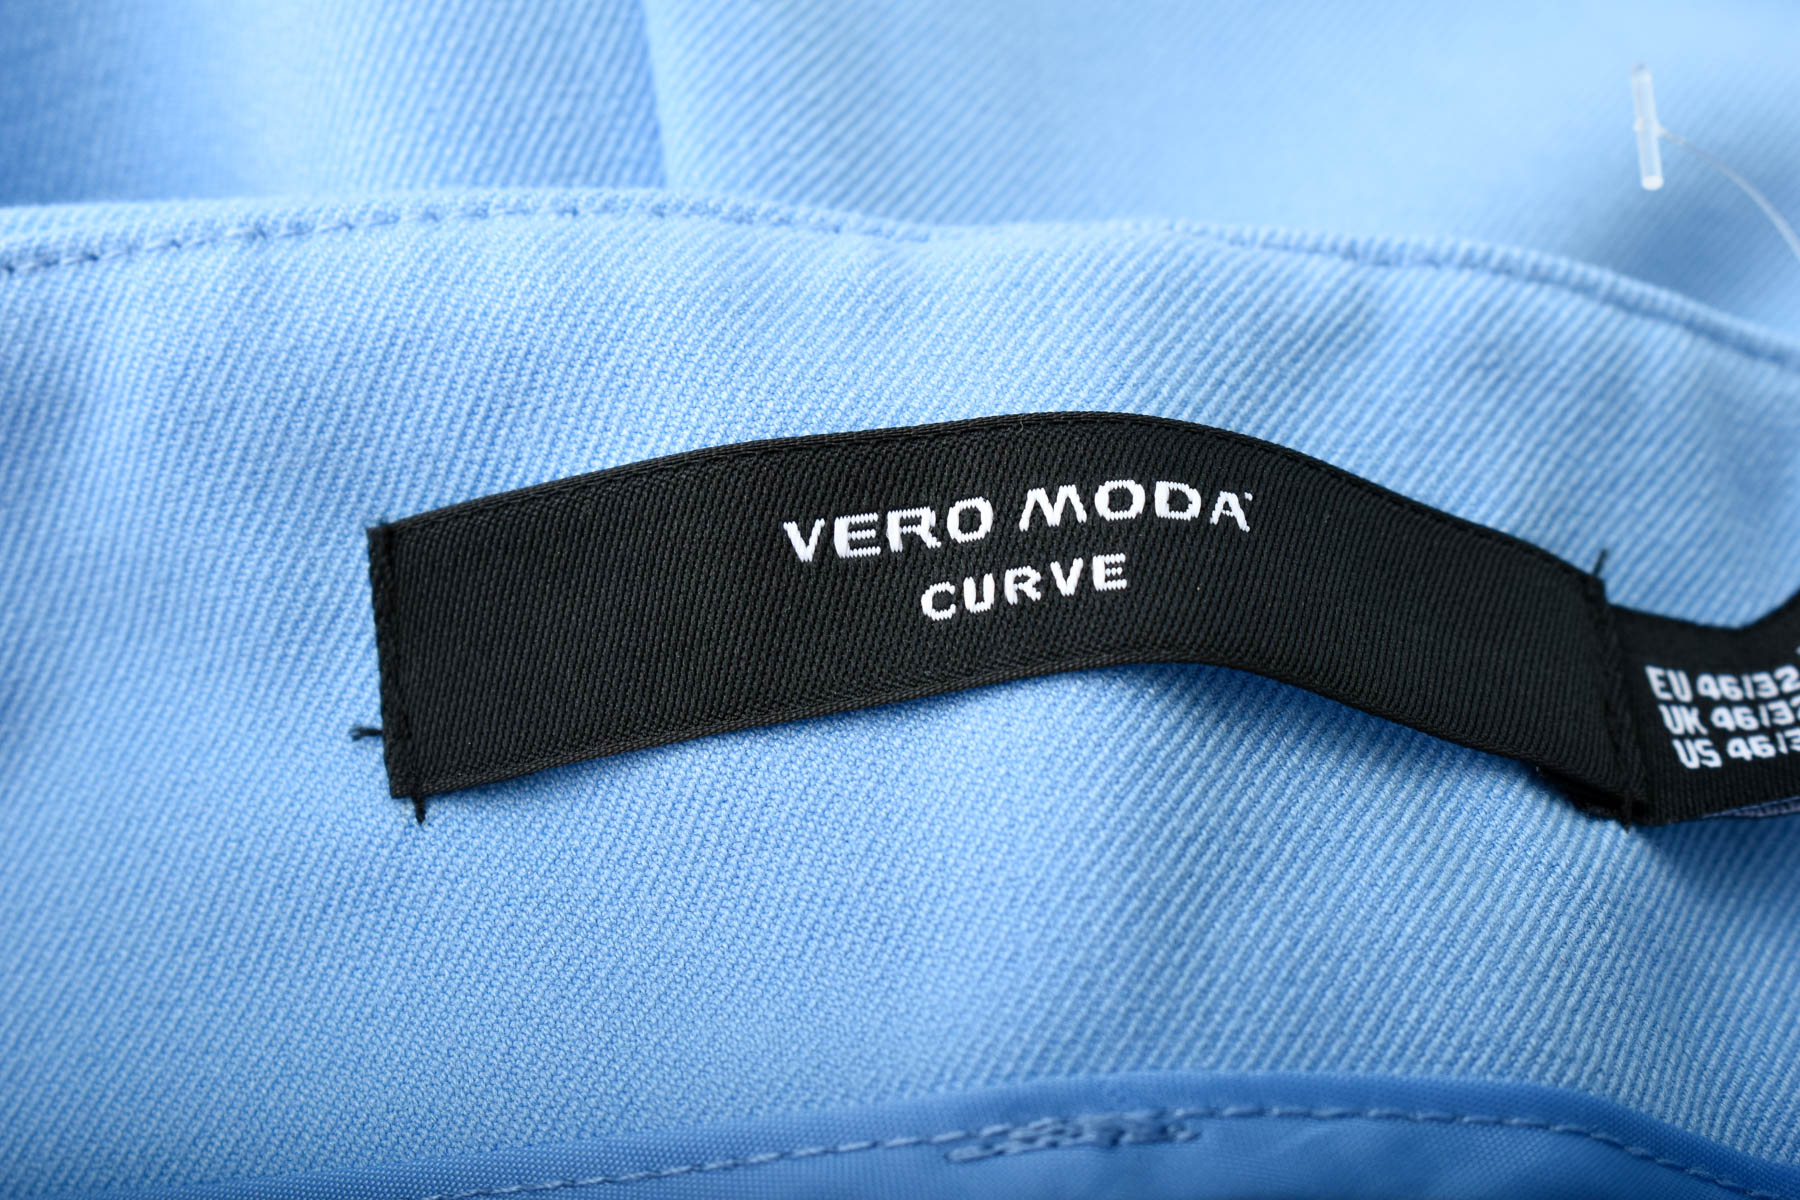 Γυναικεία παντελόνια - VERO MODA - 2